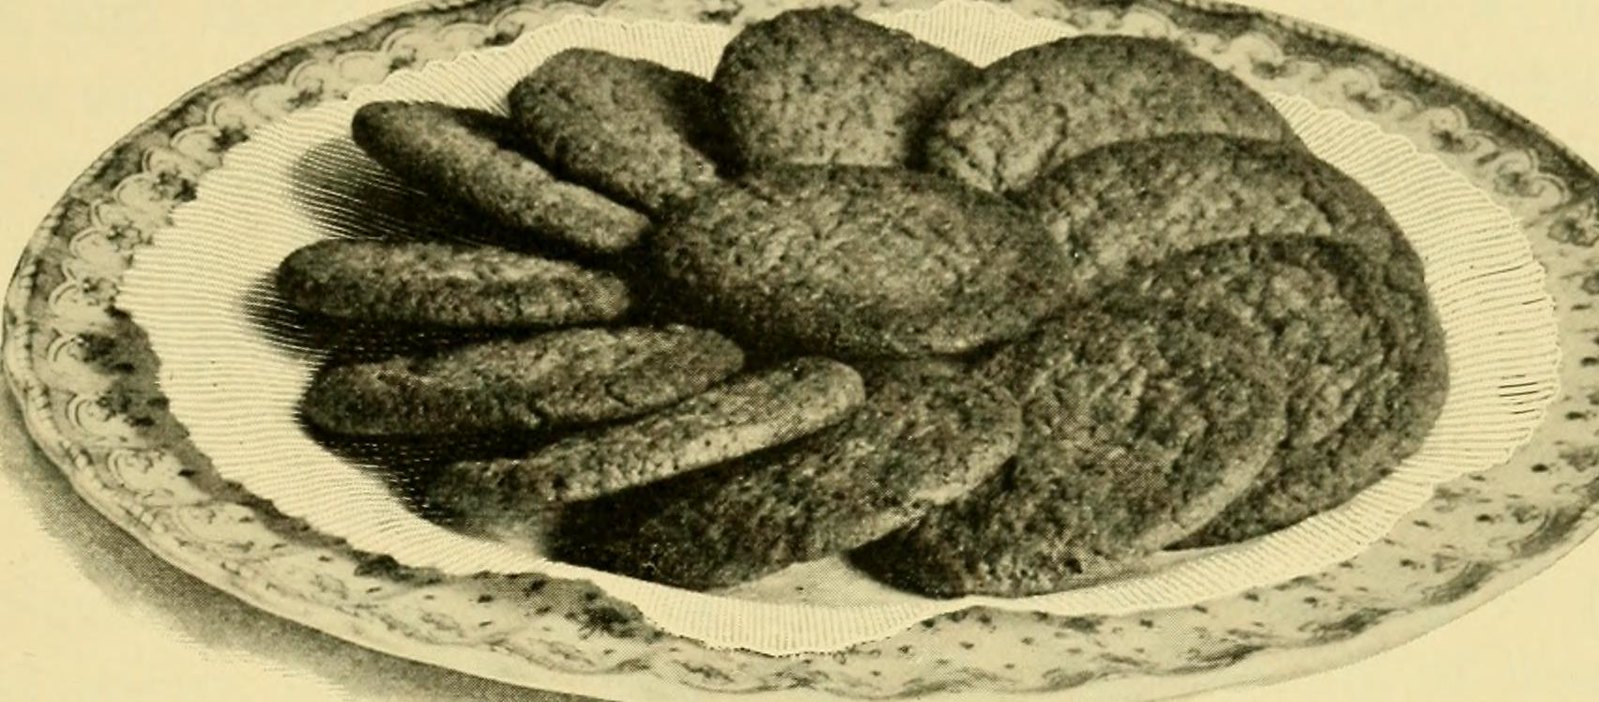 cookies (public domain, https://flic.kr/p/owGwDH)